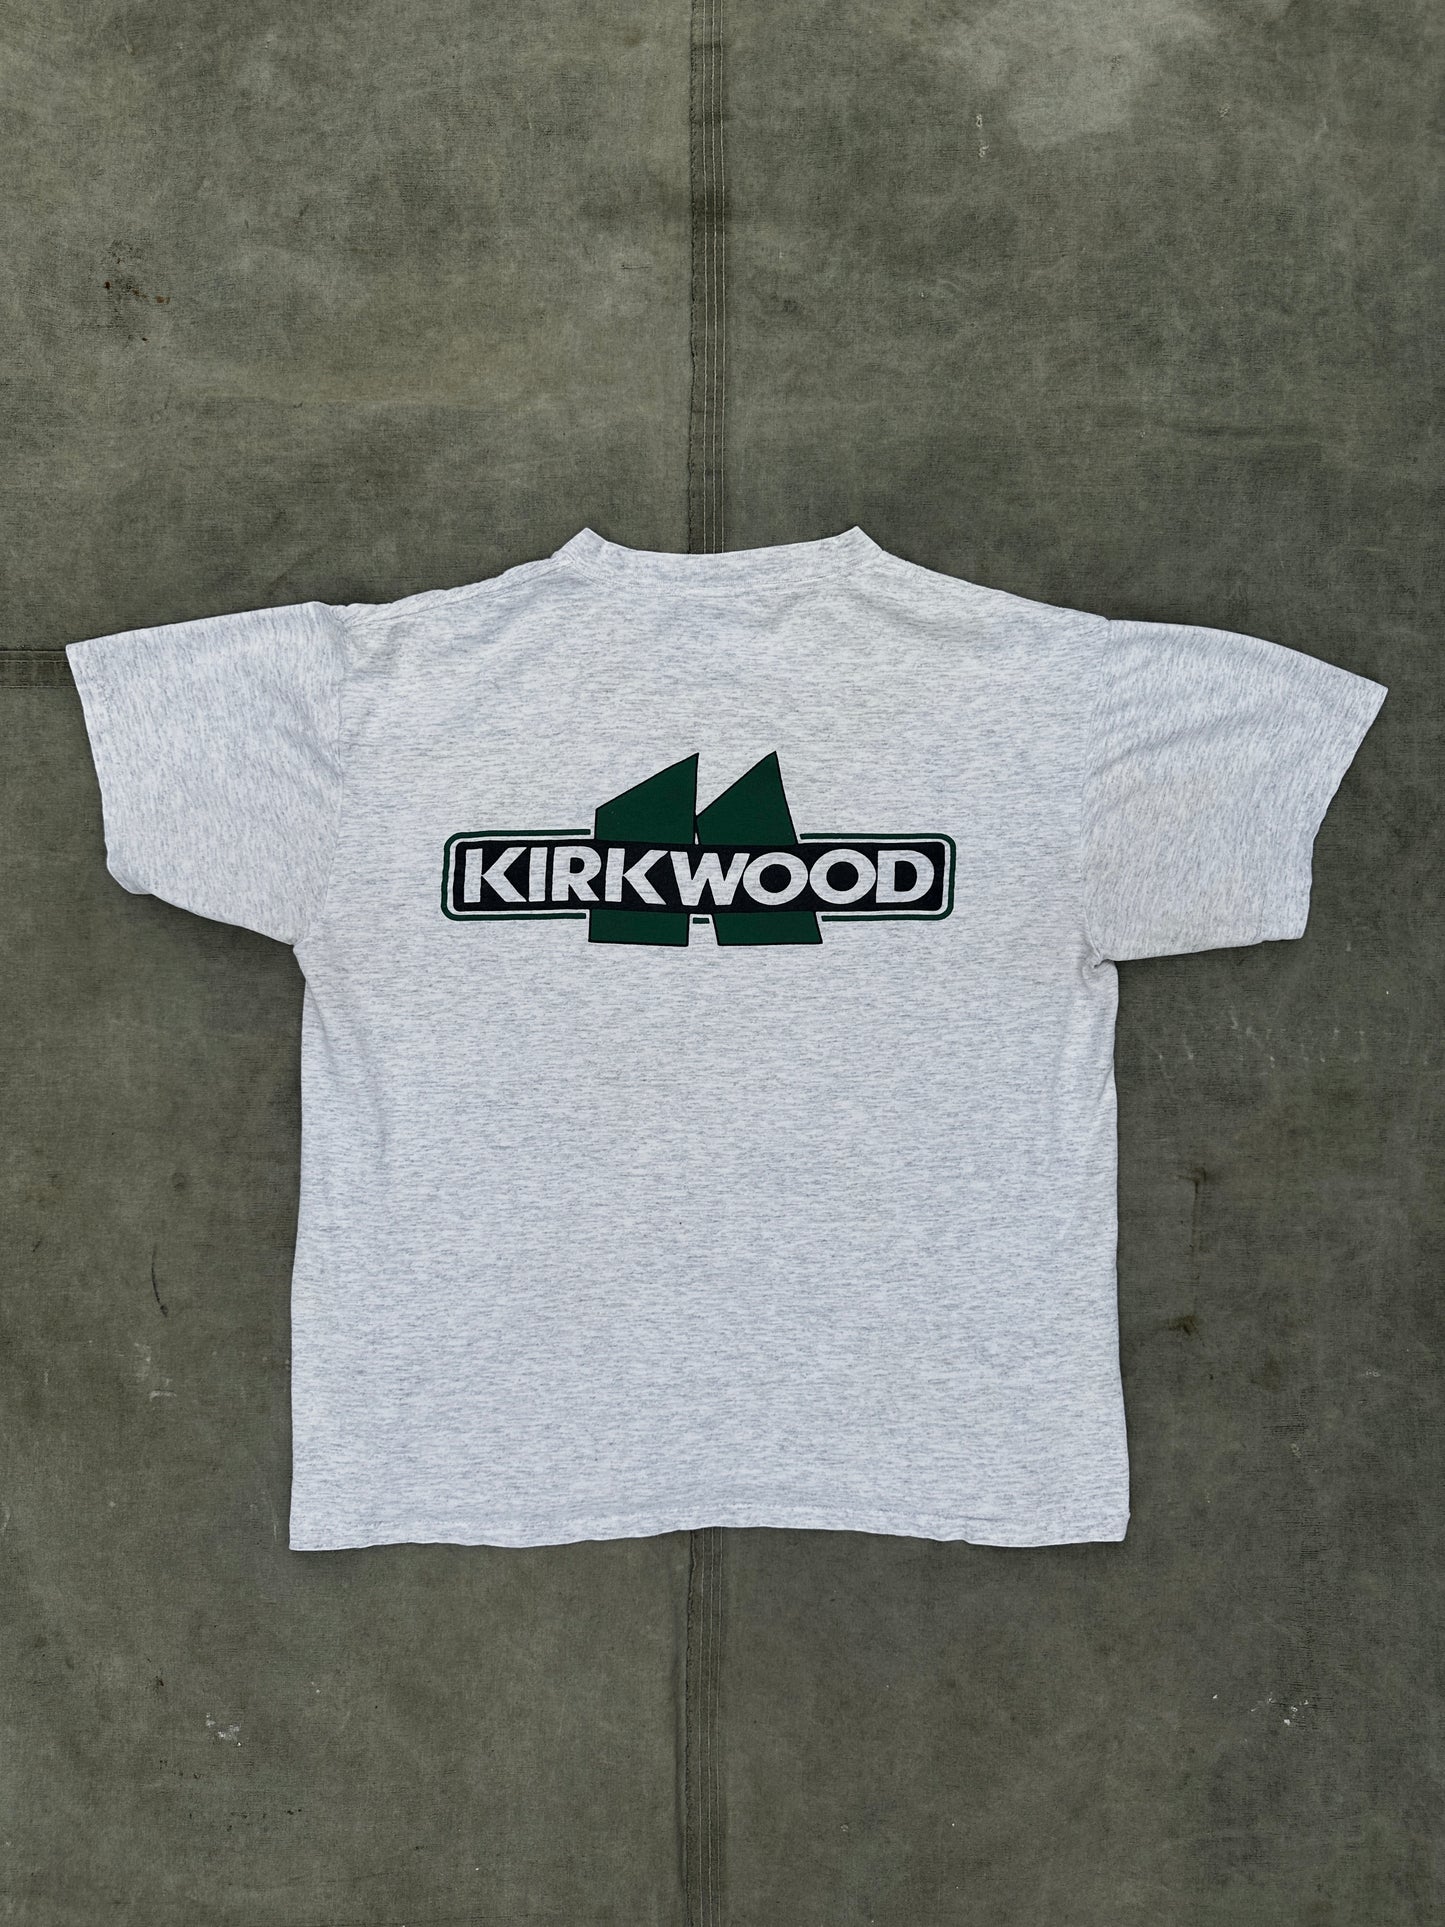 1990s KIRKWOOD TEE